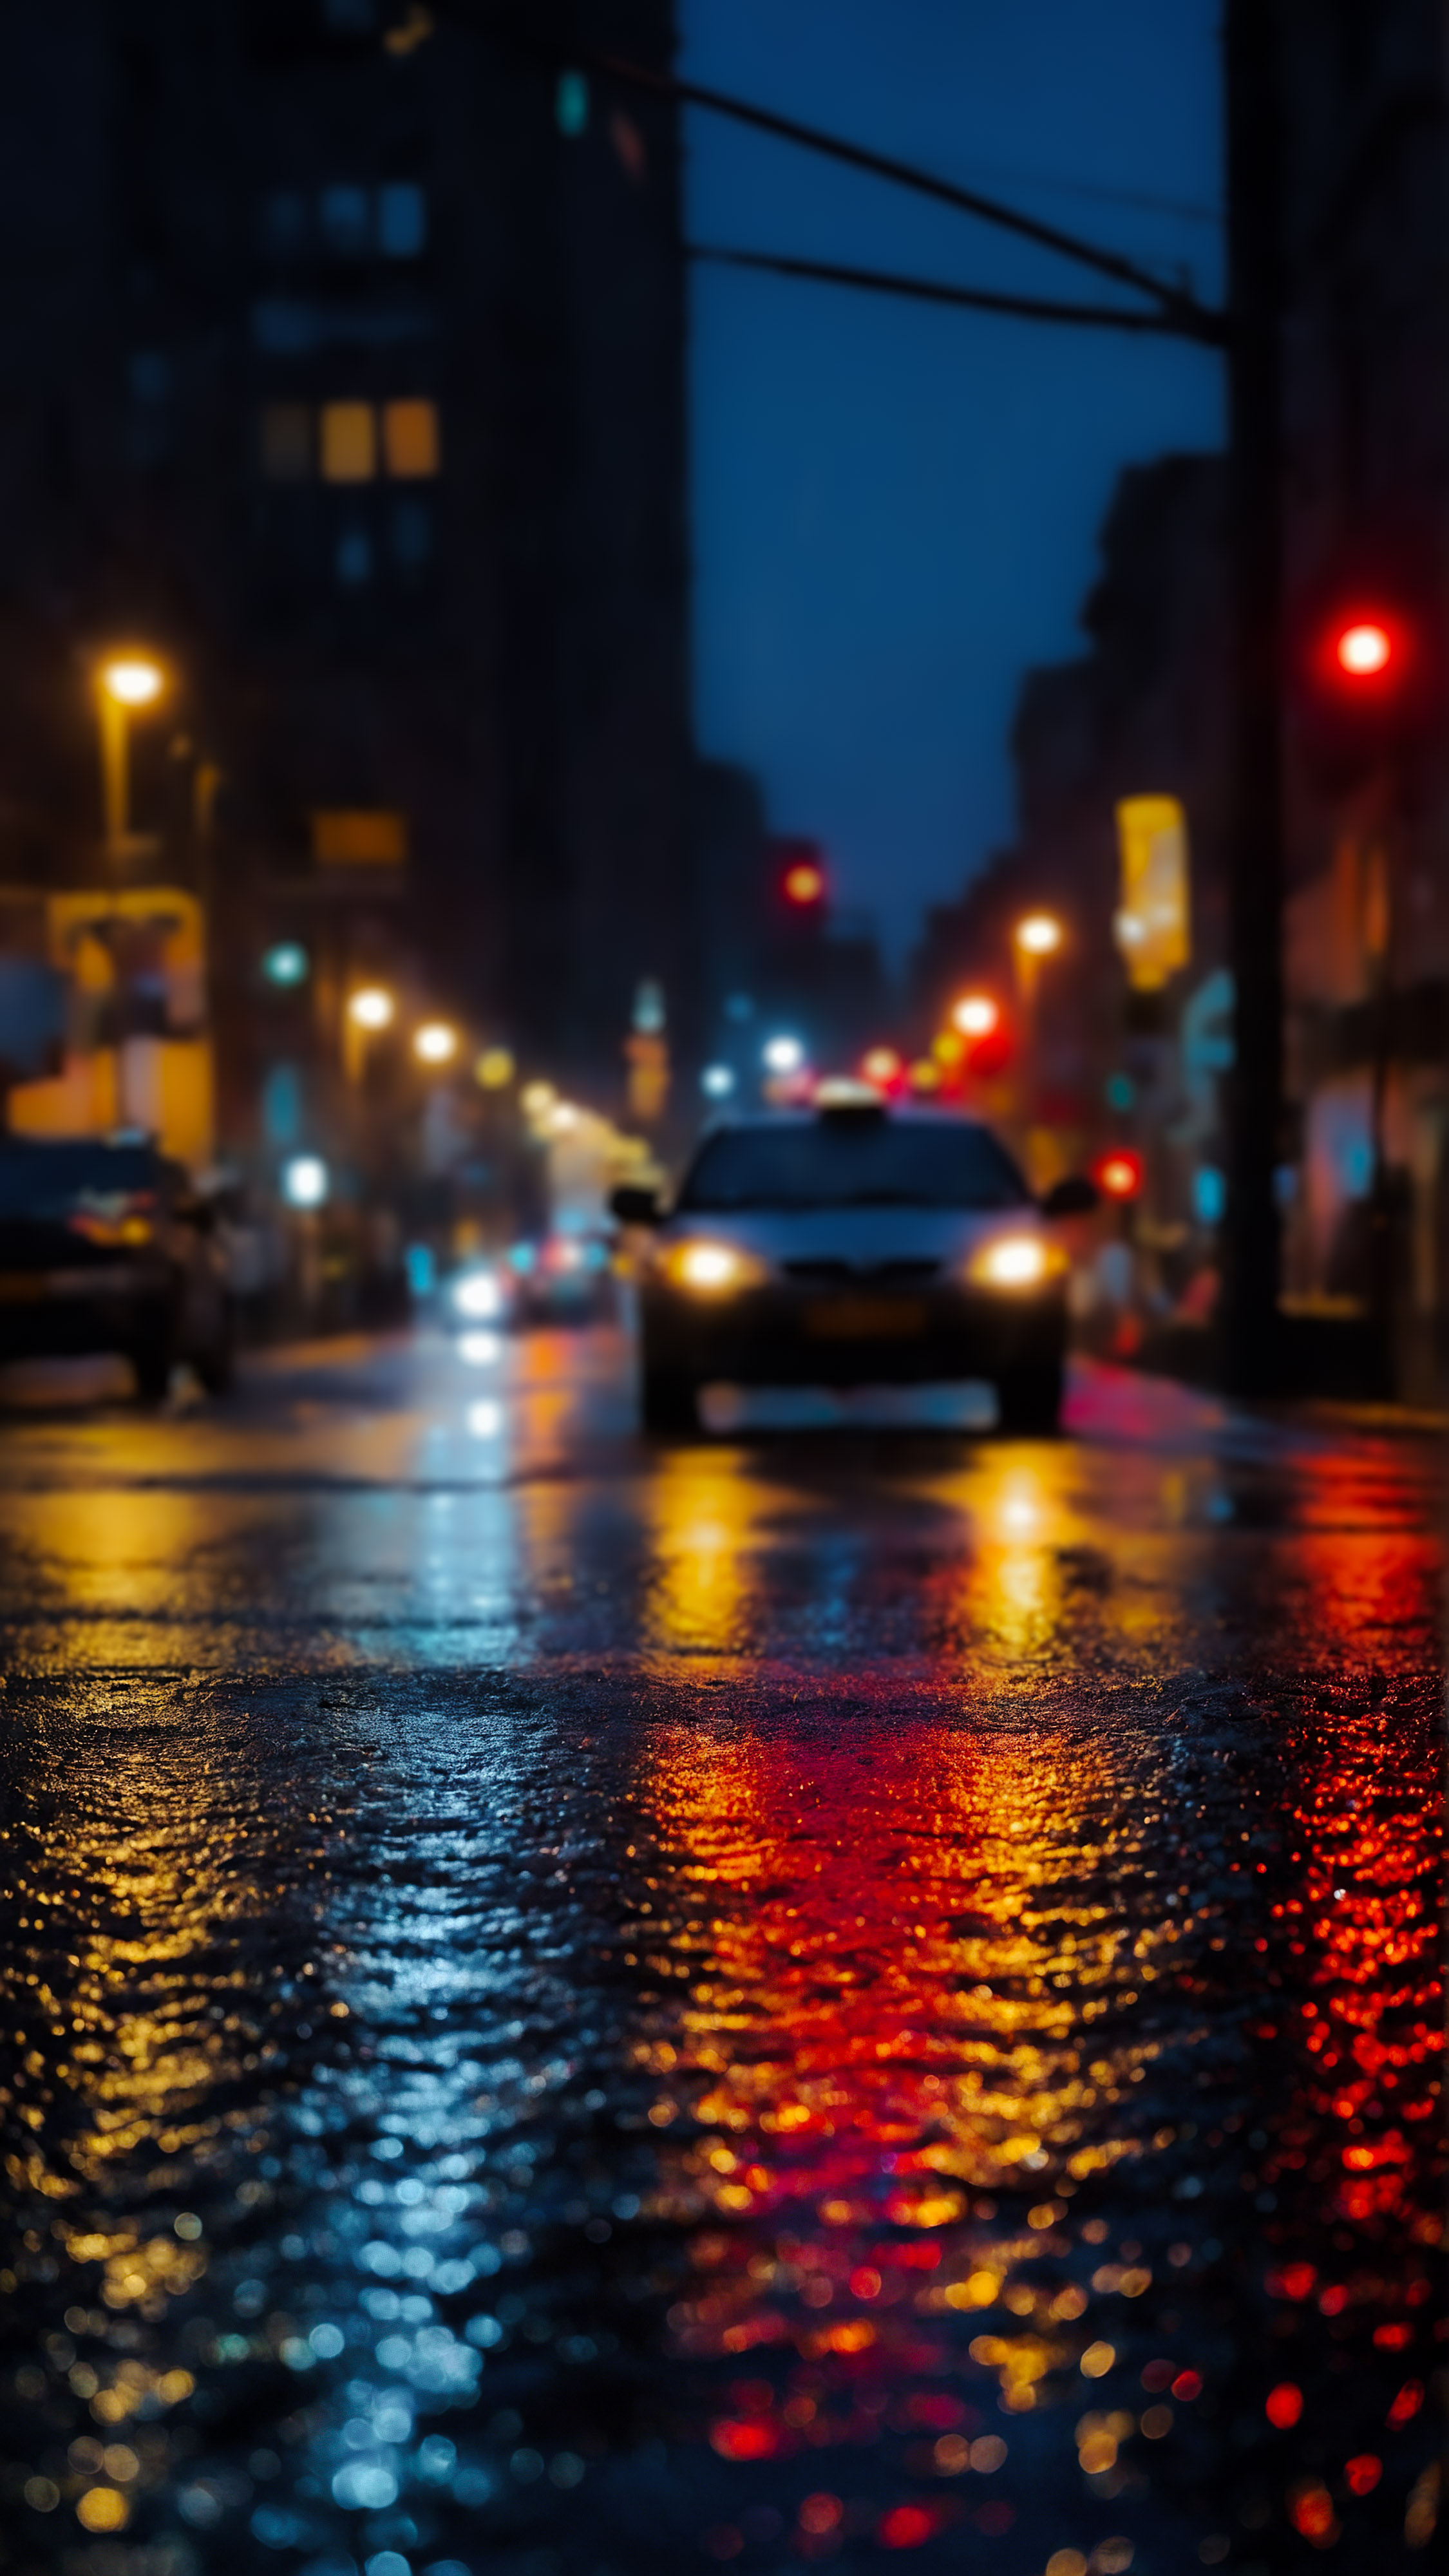 Transformez l'apparence de votre appareil avec notre fond d'écran de ville 4K pour iPhone, capturant une scène nocturne où une rue mouillée prend vie avec la lueur colorée des lampadaires et des feux de circulation, leurs reflets rouges et bleus créant un contraste frappant sur la surface de la route scintillante. 